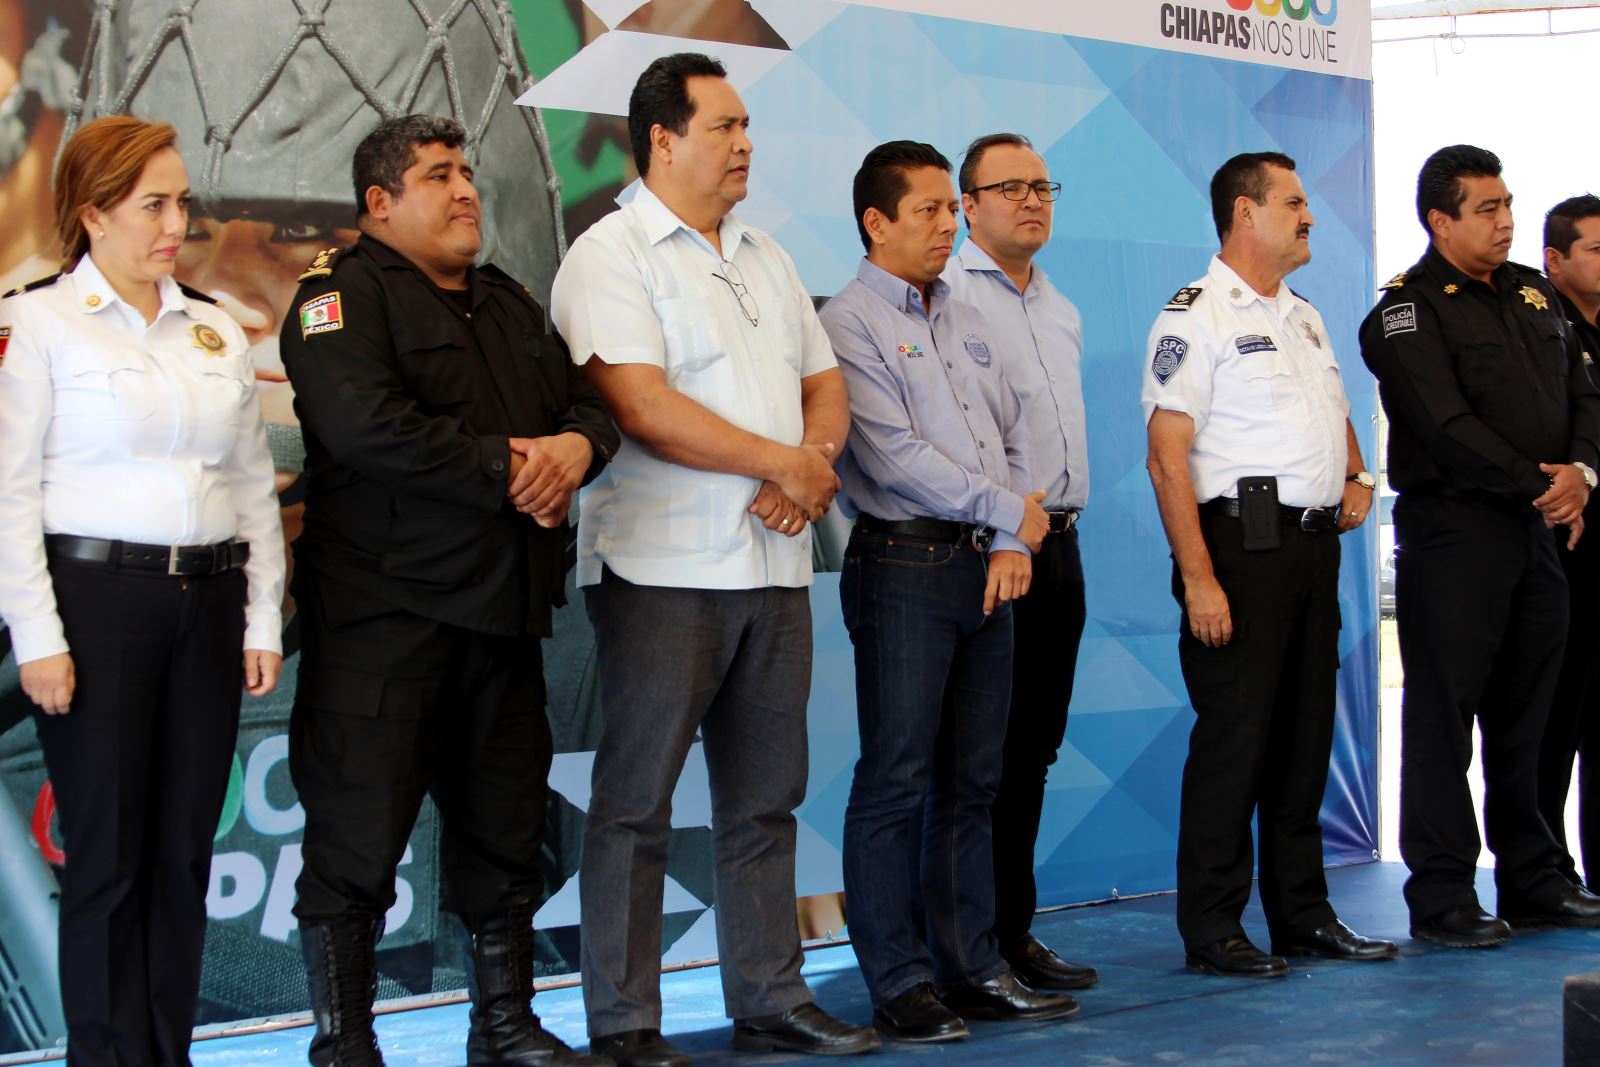 Titular de la SSyPC reconoce labor de policías y exhorta a cuidar imagen institucional